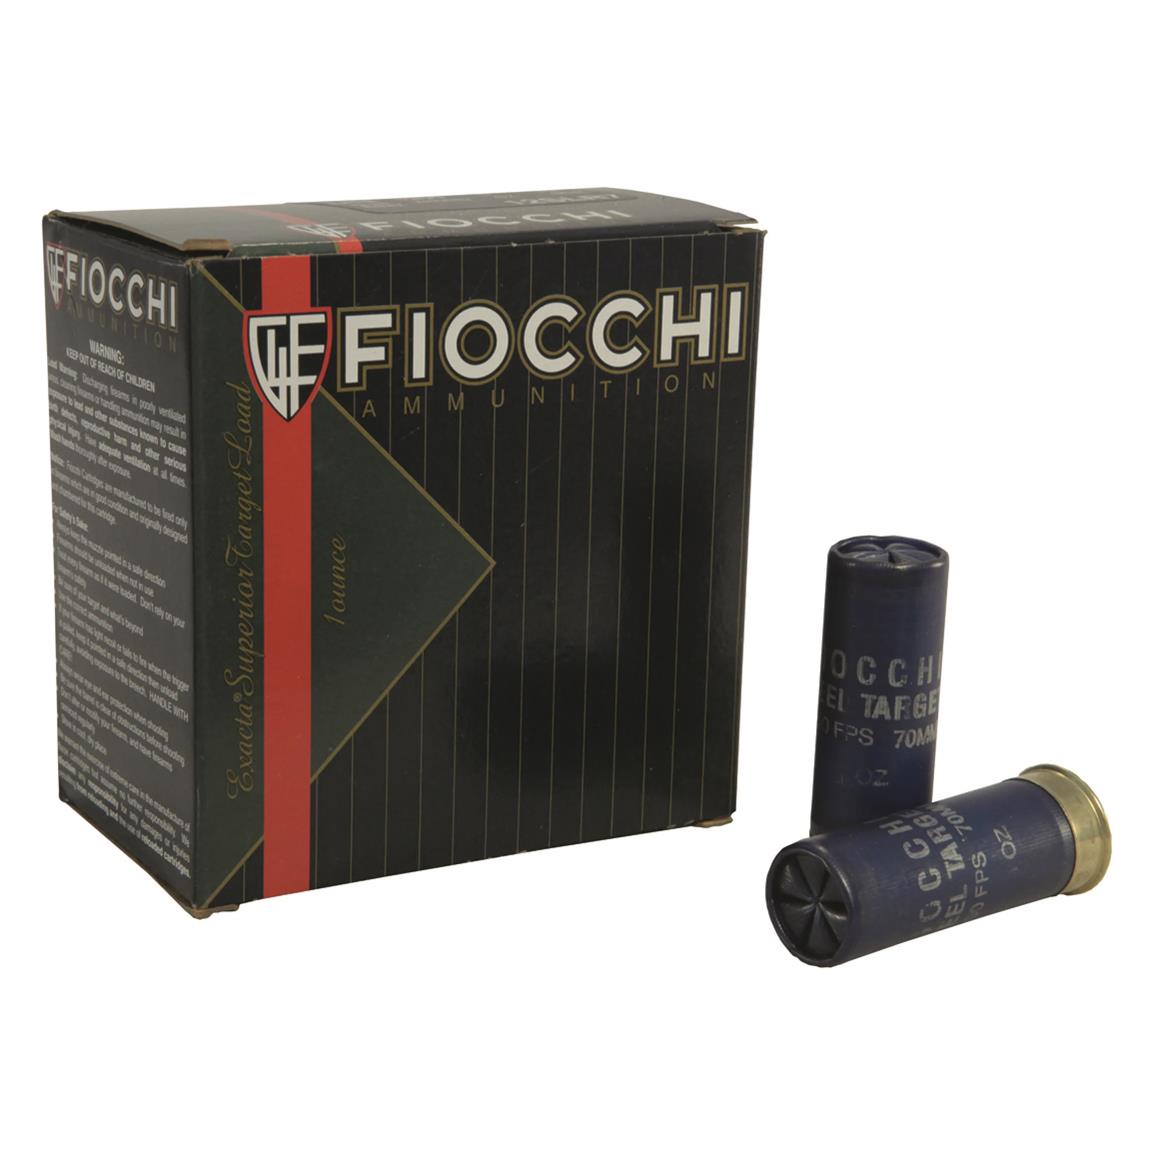 Fiocchi Target 12SLR7, 12 Gauge Ammo, 2 3/4", 1 oz. Steel Shot, 250 Rounds